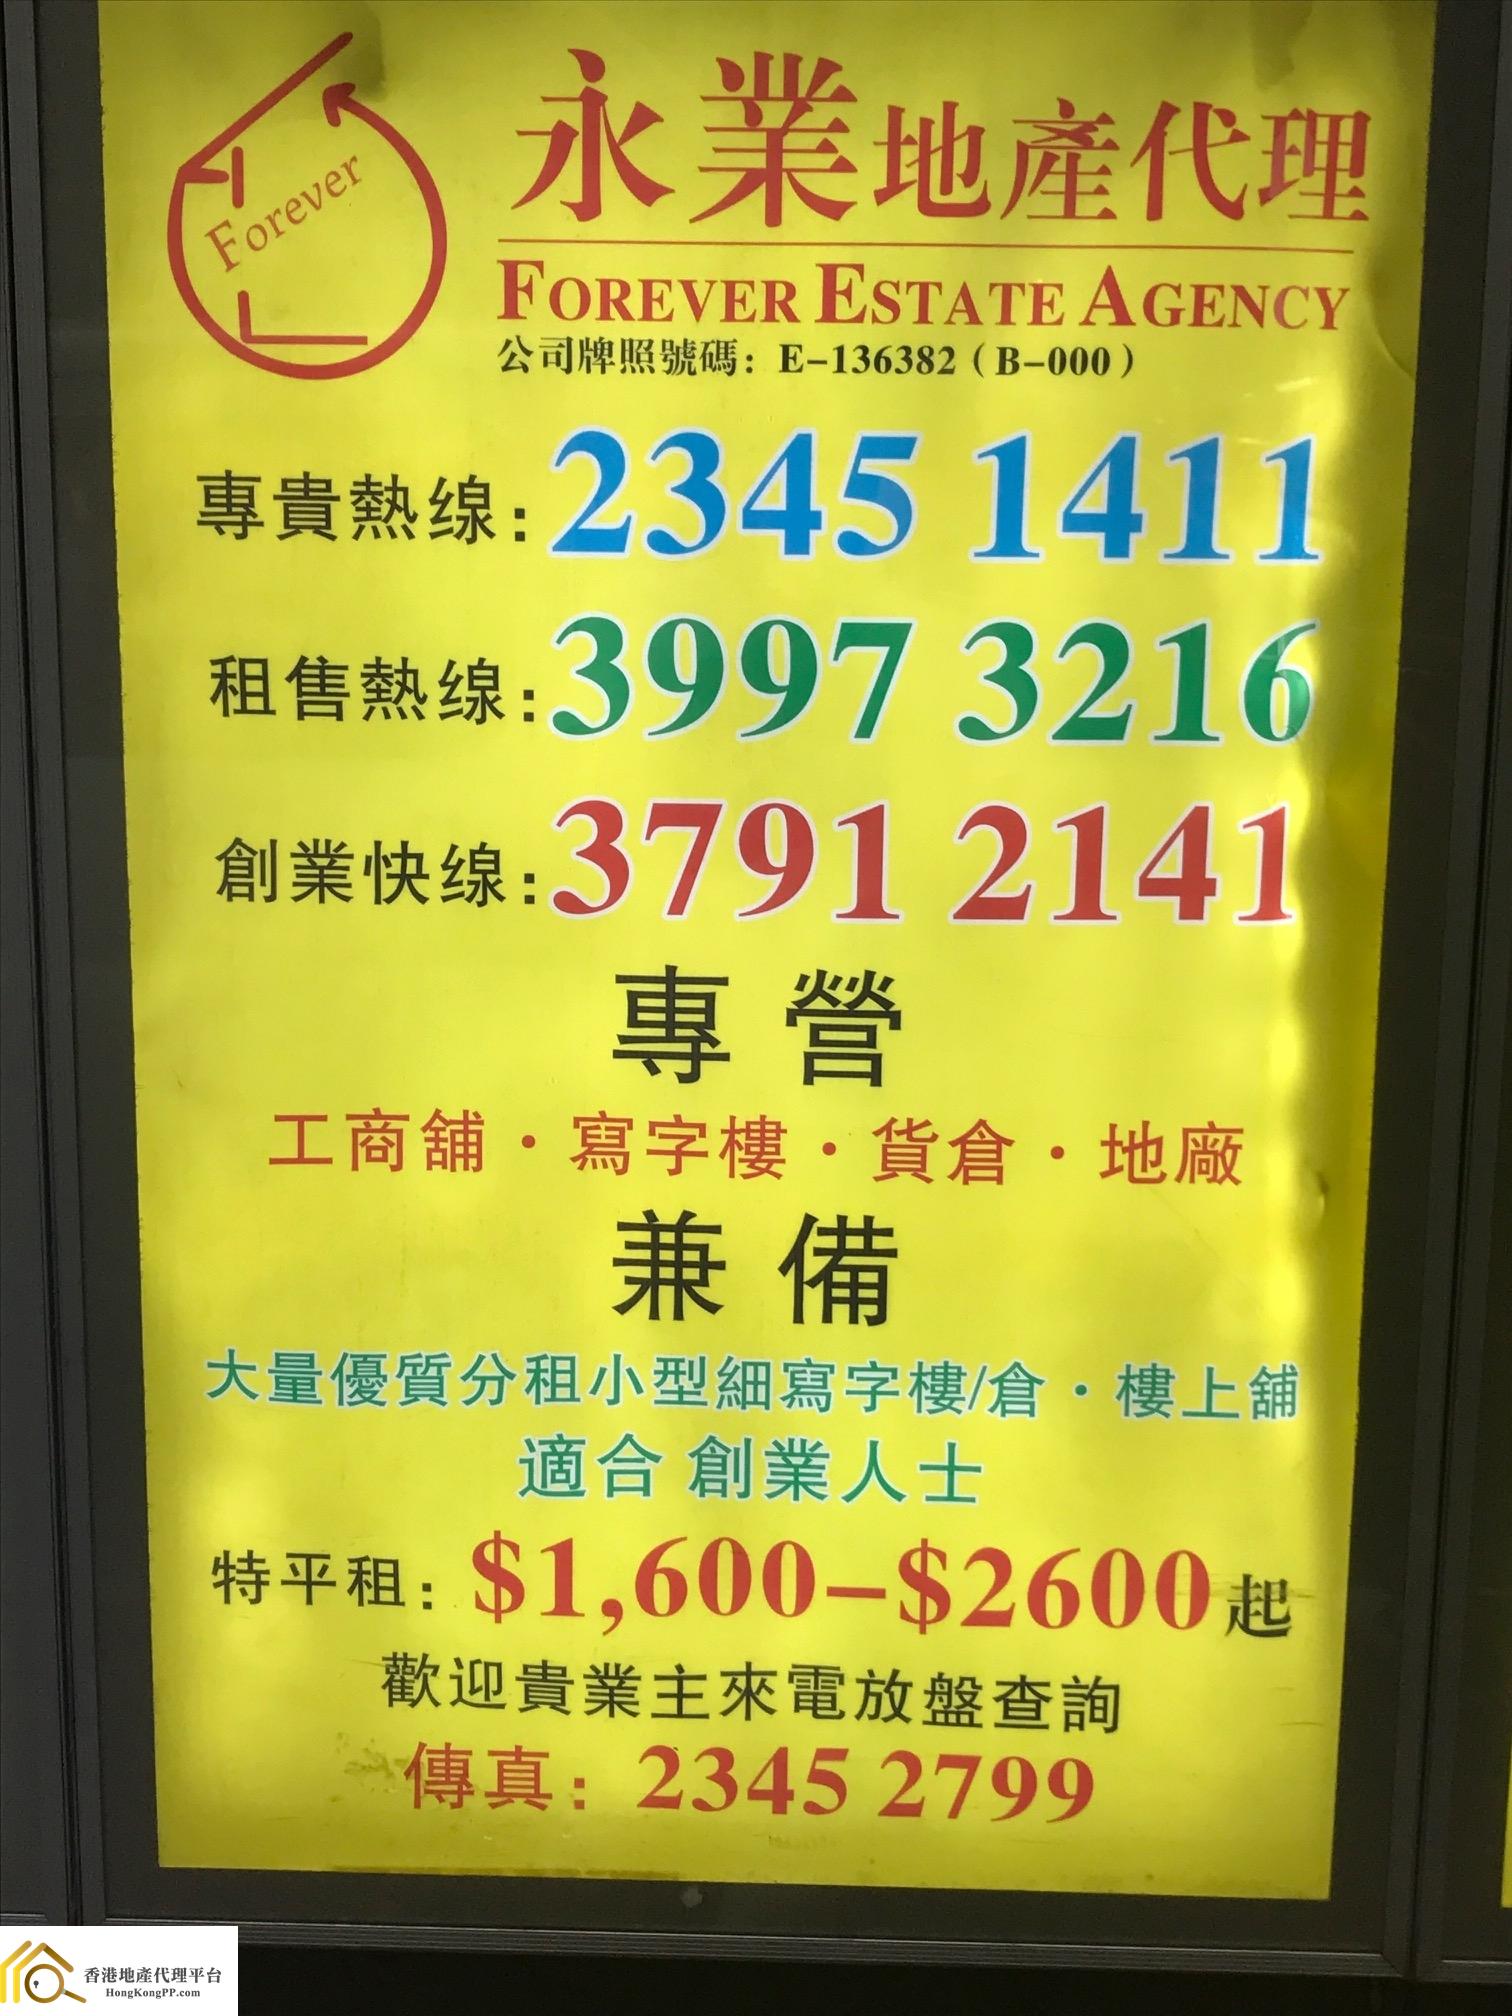 HousingEstate Agent: 永業地產代理 Forever Estate Agency 